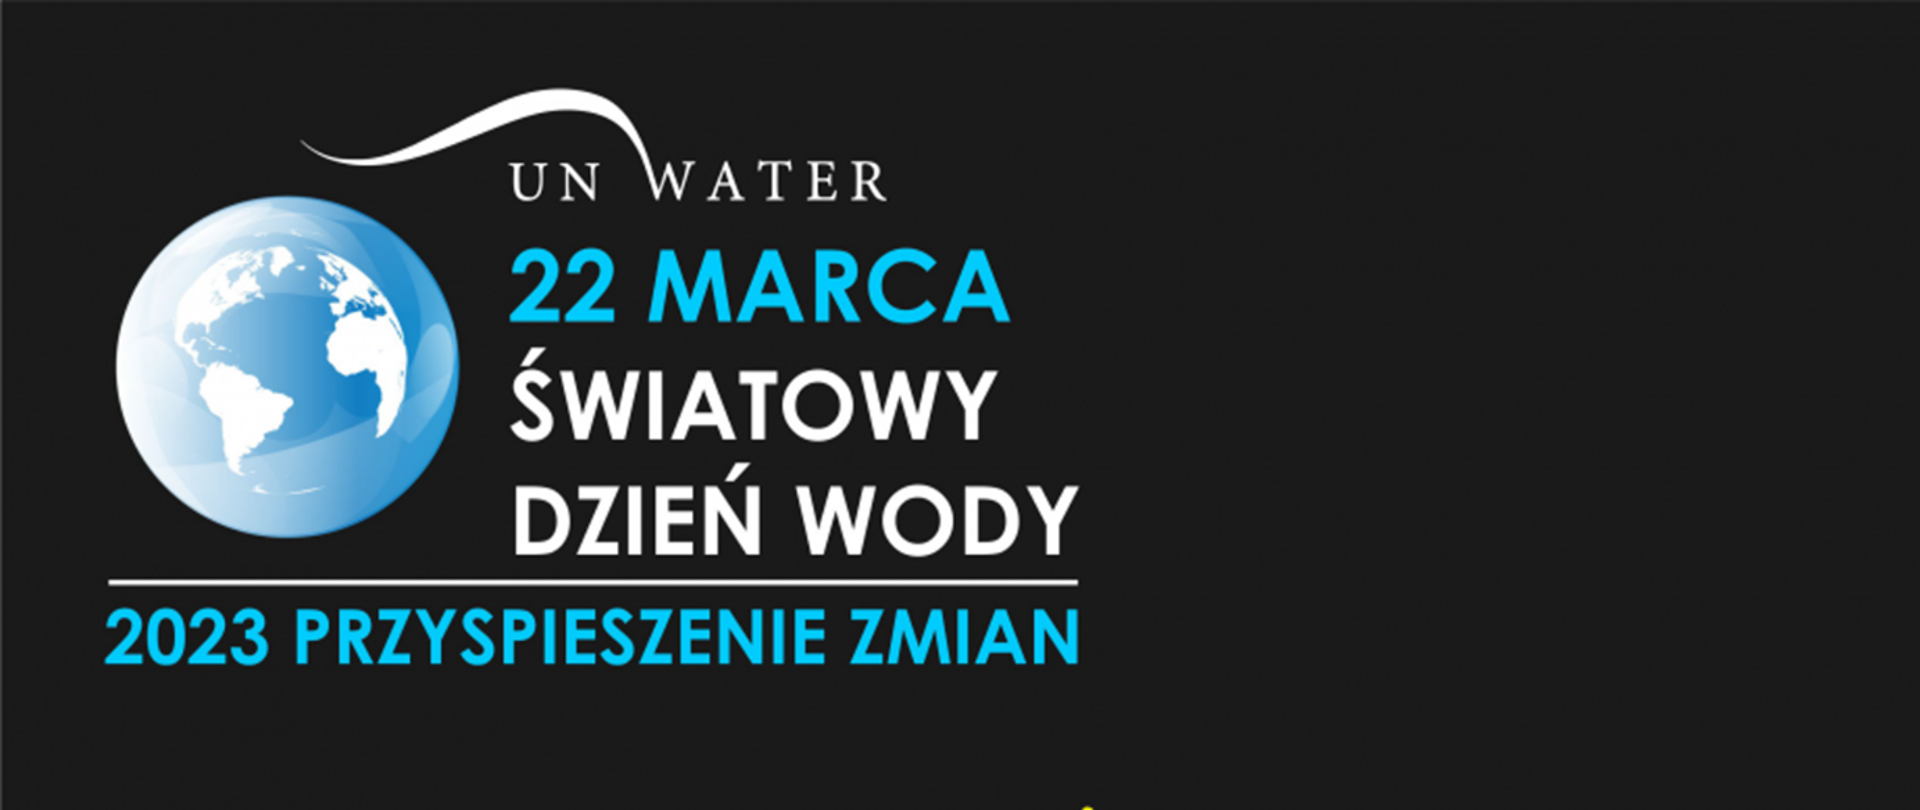 22 Marca Światowy Dzień Wody - 2023 Przyspieszenie zmian